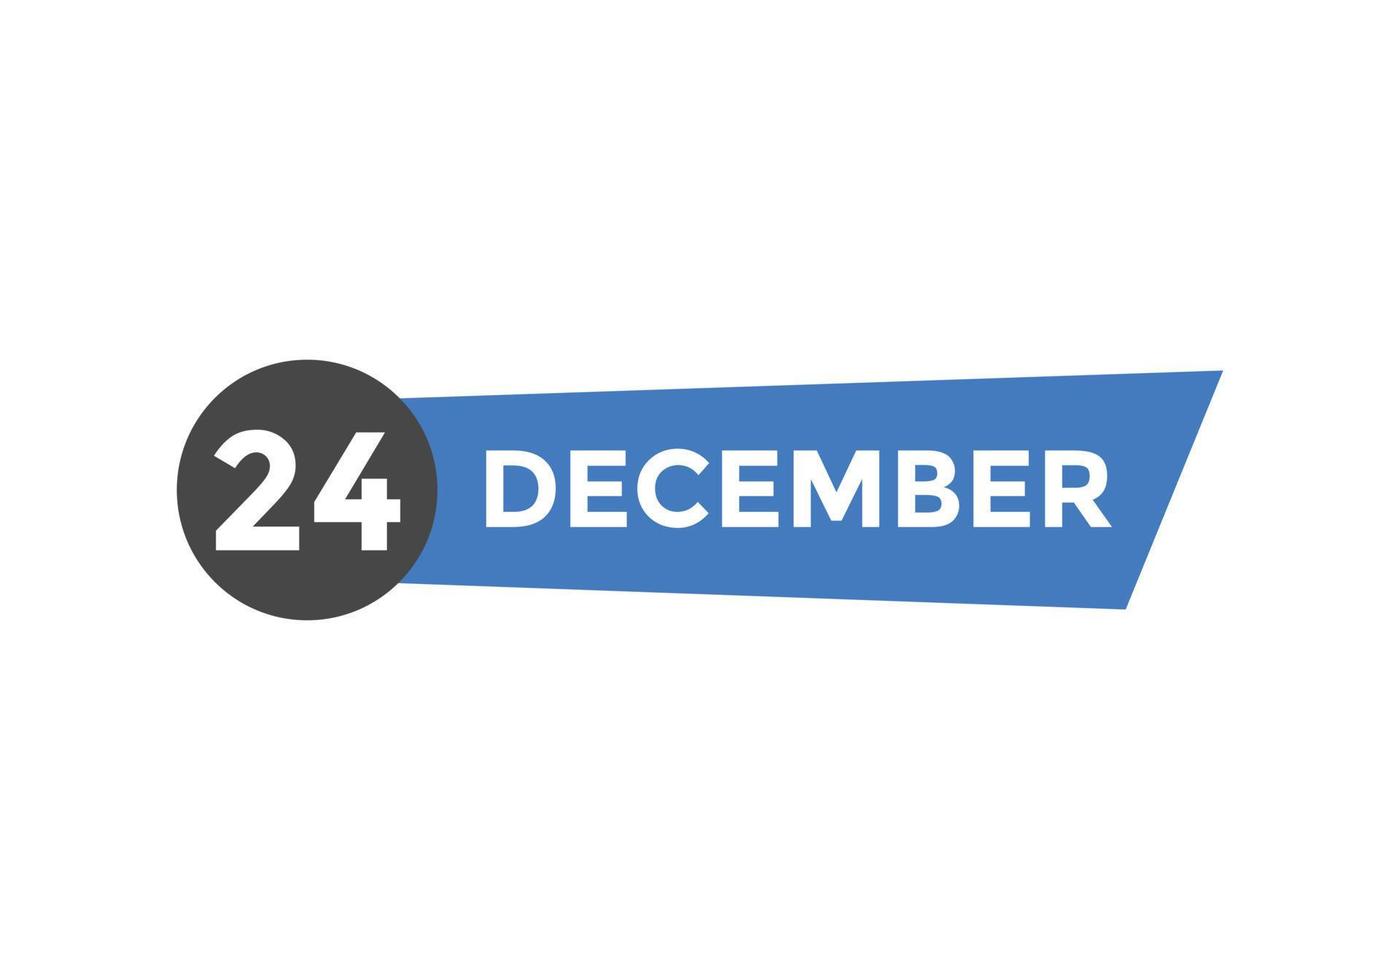 december 24 kalender påminnelse. 24:e december dagligen kalender ikon mall. kalender 24:e december ikon design mall. vektor illustration